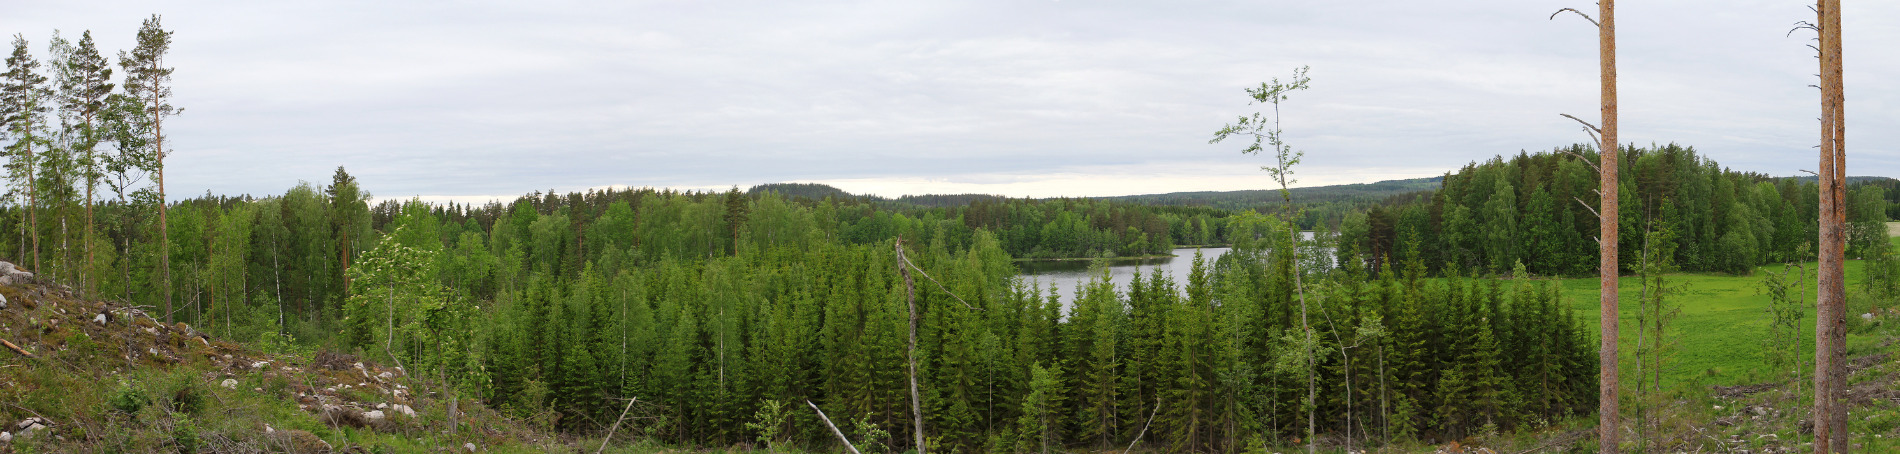 Nationalpark Tiilikkajärvi